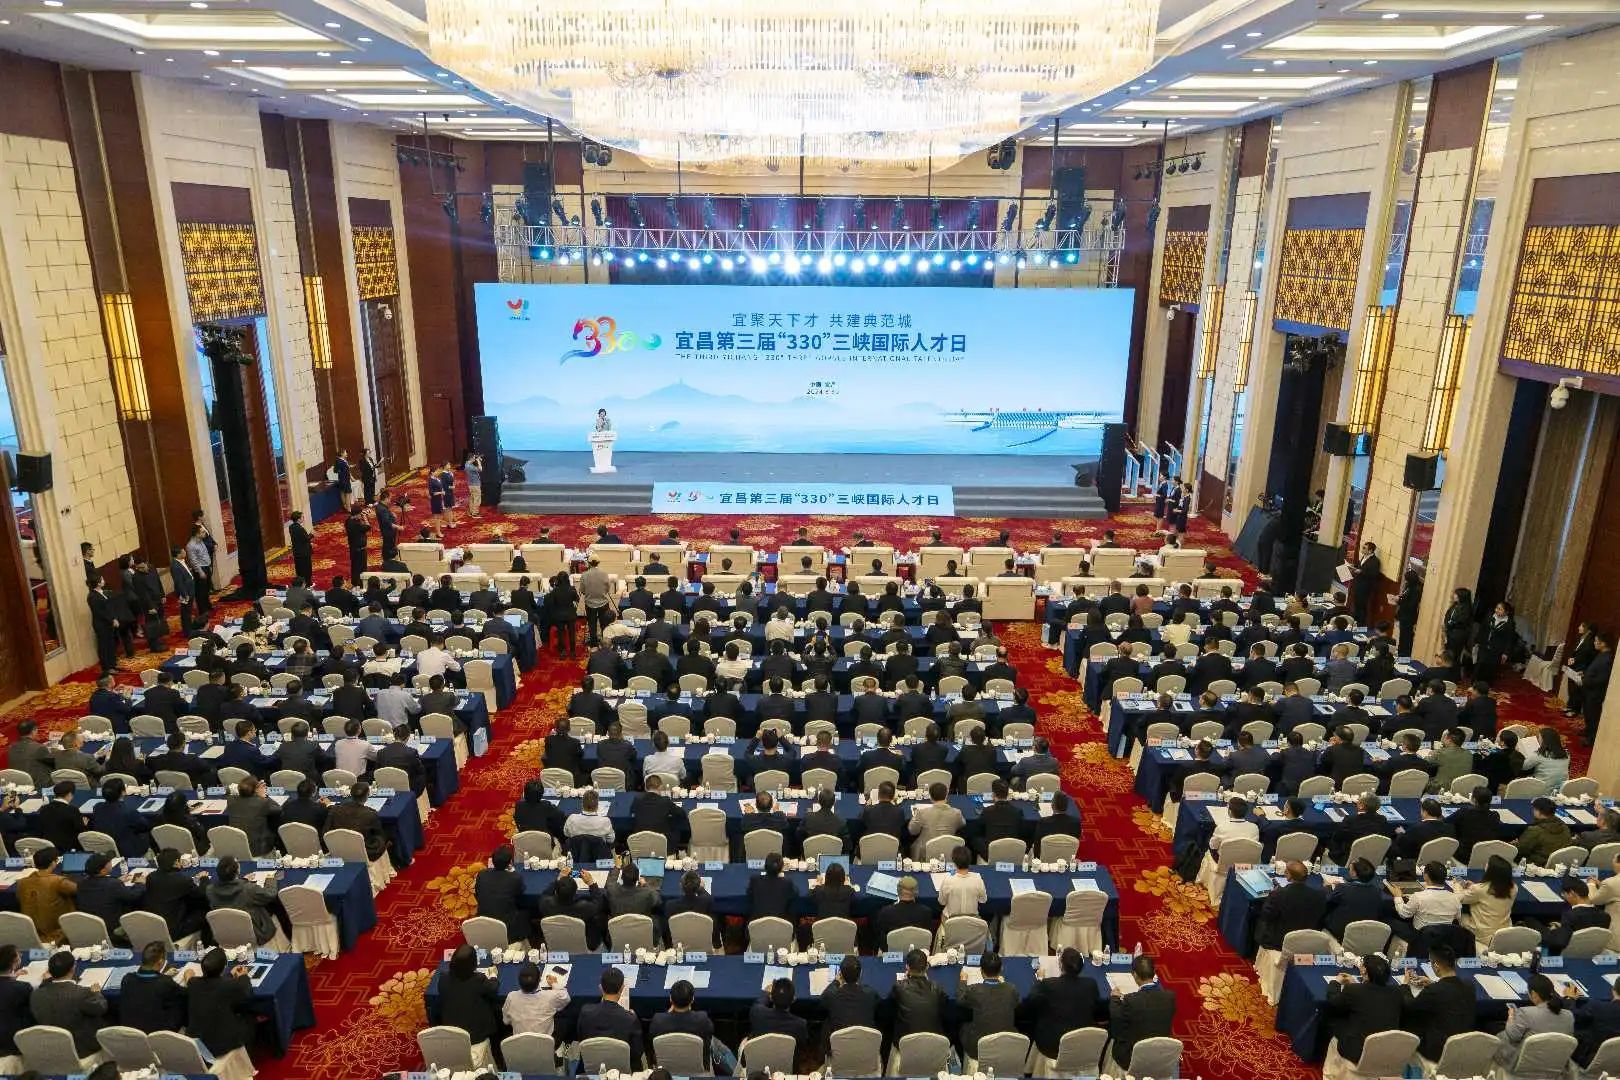 宜昌第三届“330”三峡国际人才日活动举行